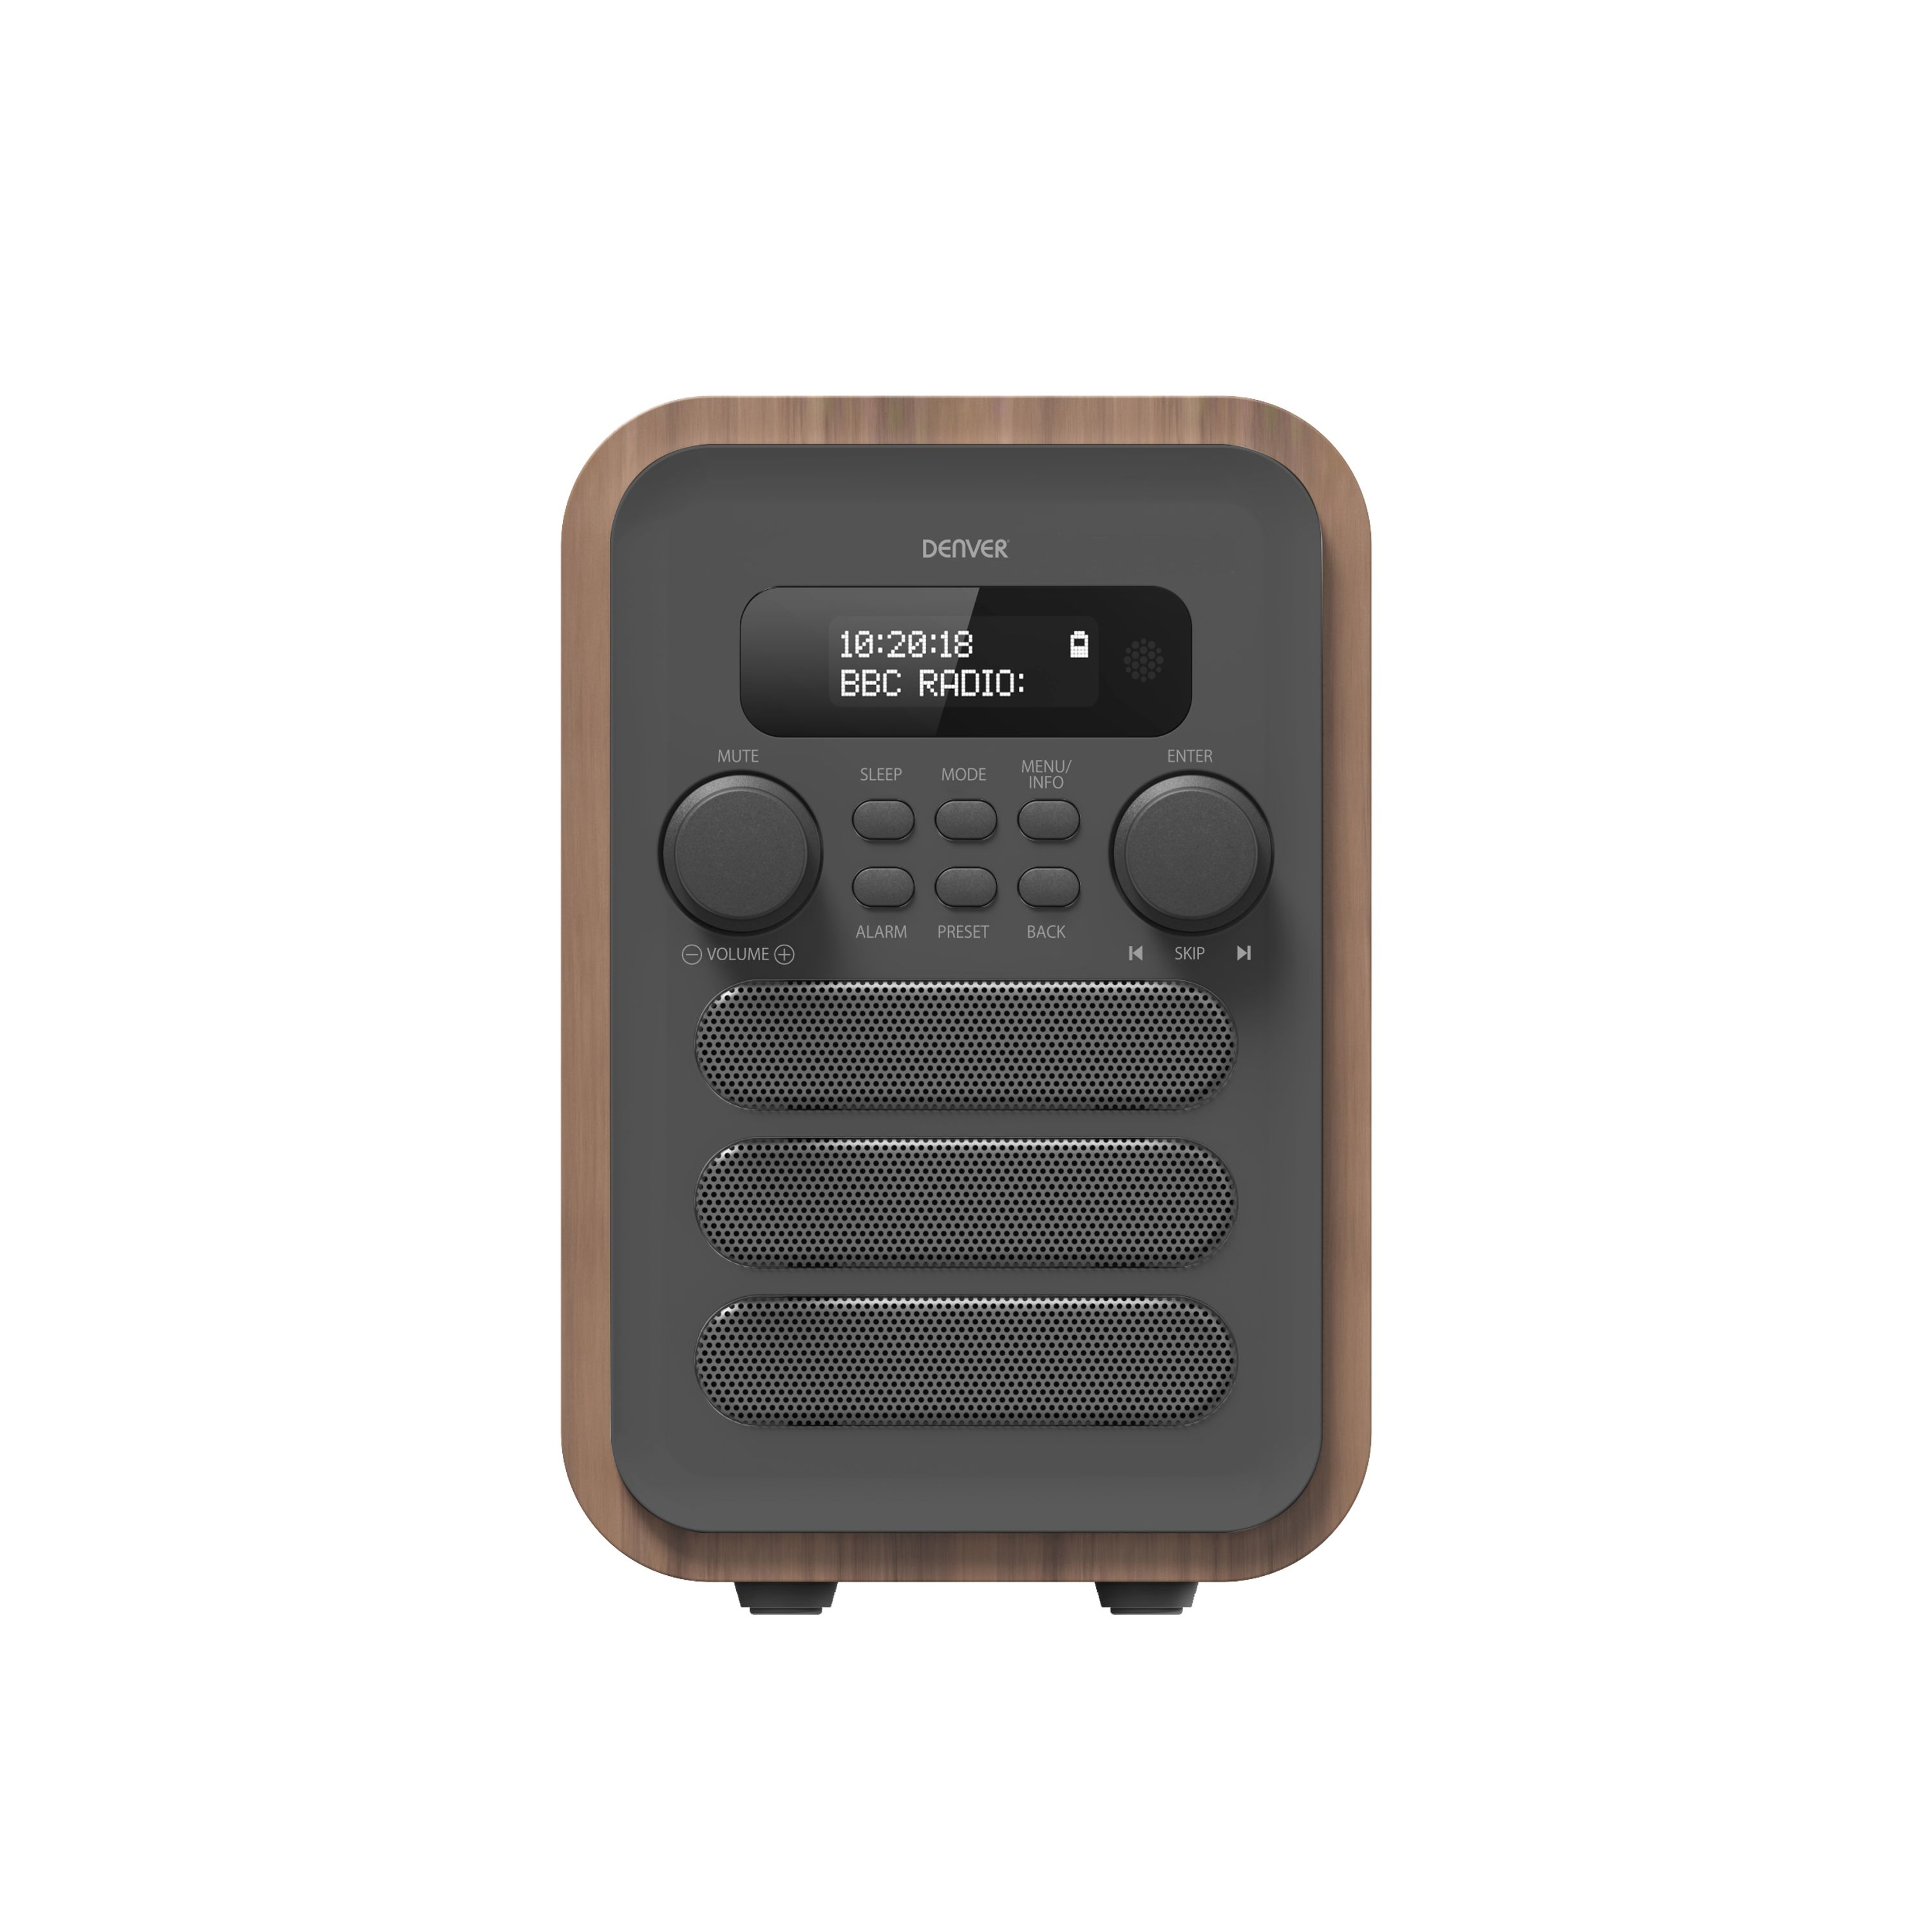 DENVER DAB-48 Digitalradio, grau, FM, braun DAB, Bluetooth, DAB